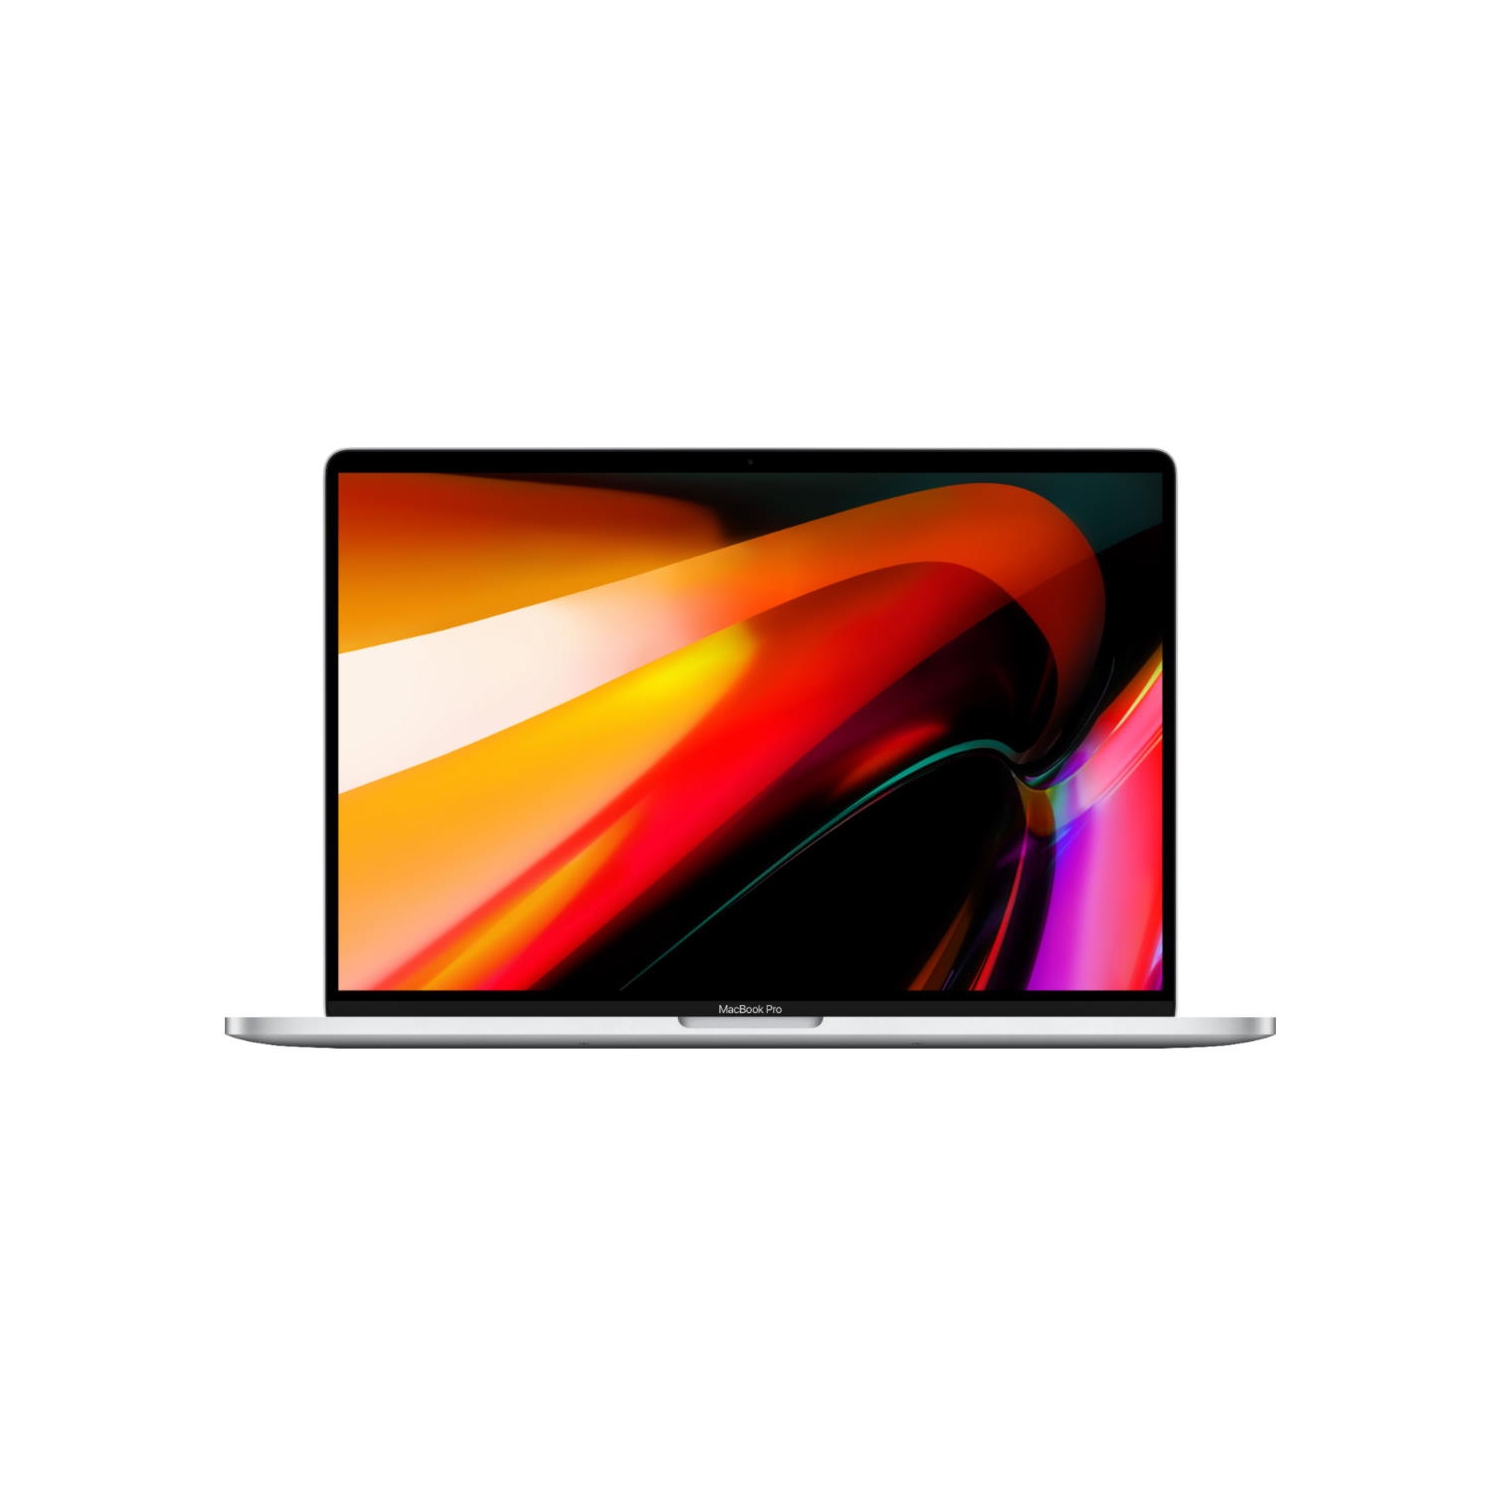 (Refurbished - Excellent) Macbook Pro 16-inch (Silver, 1yr Warranty) 2.6Ghz 6-Core i7 (2019) MVVL2LL/A 512GB Flash 16GB RAM 3072x1920 Mac OS